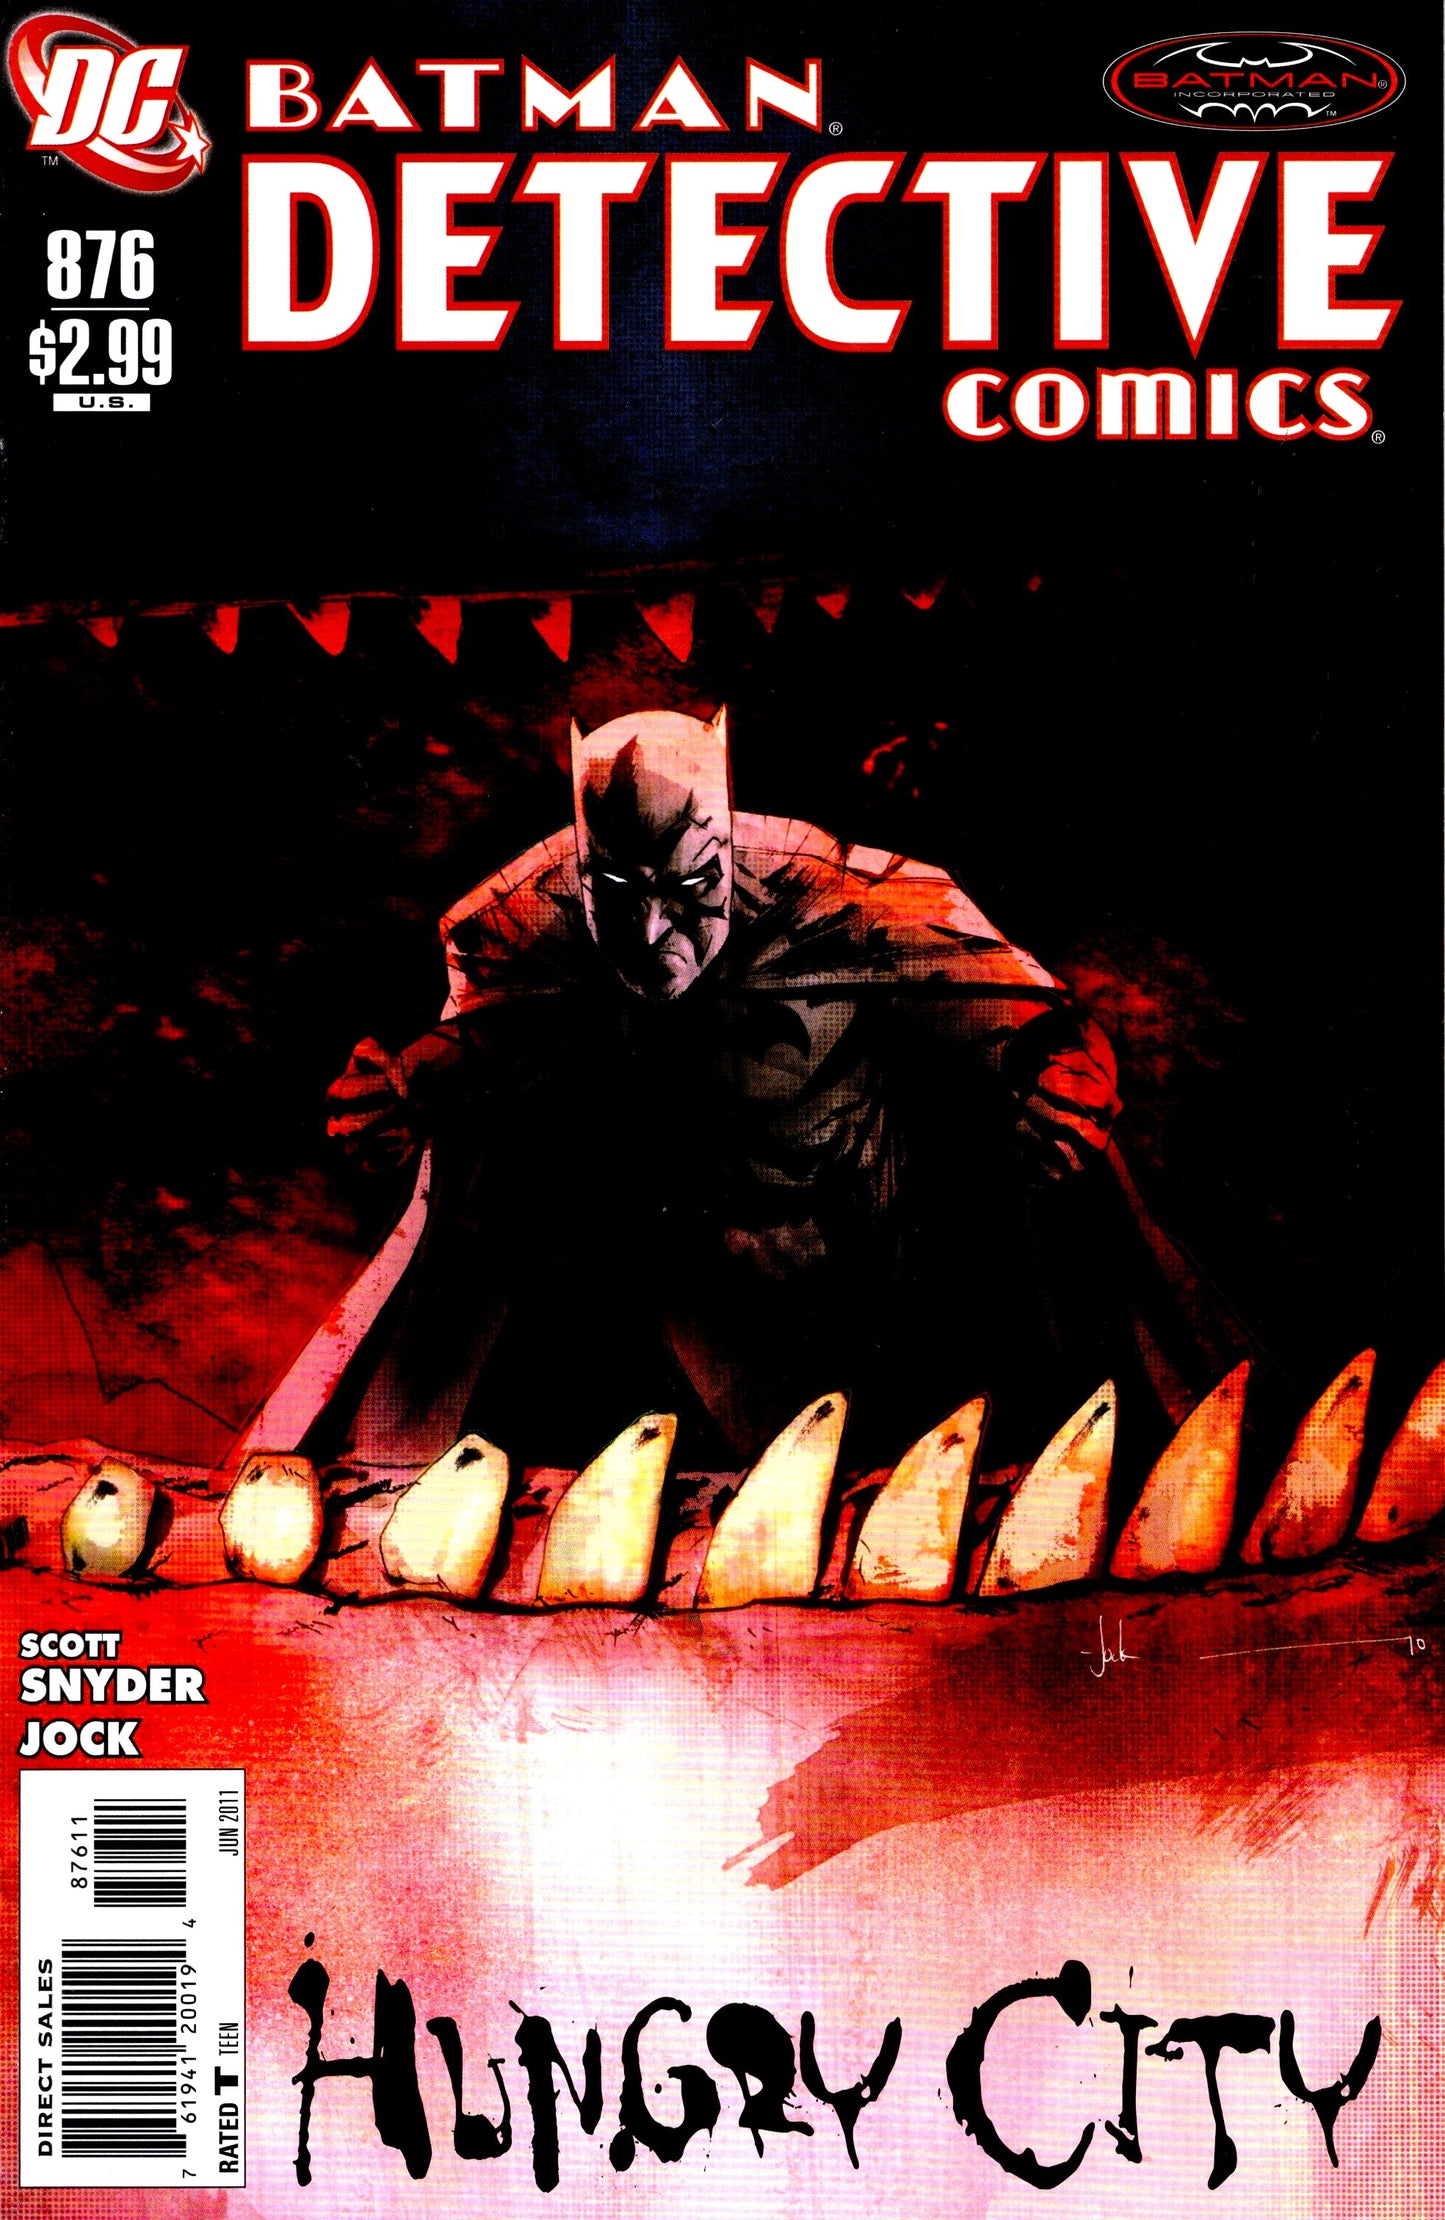 Detective Comics #876